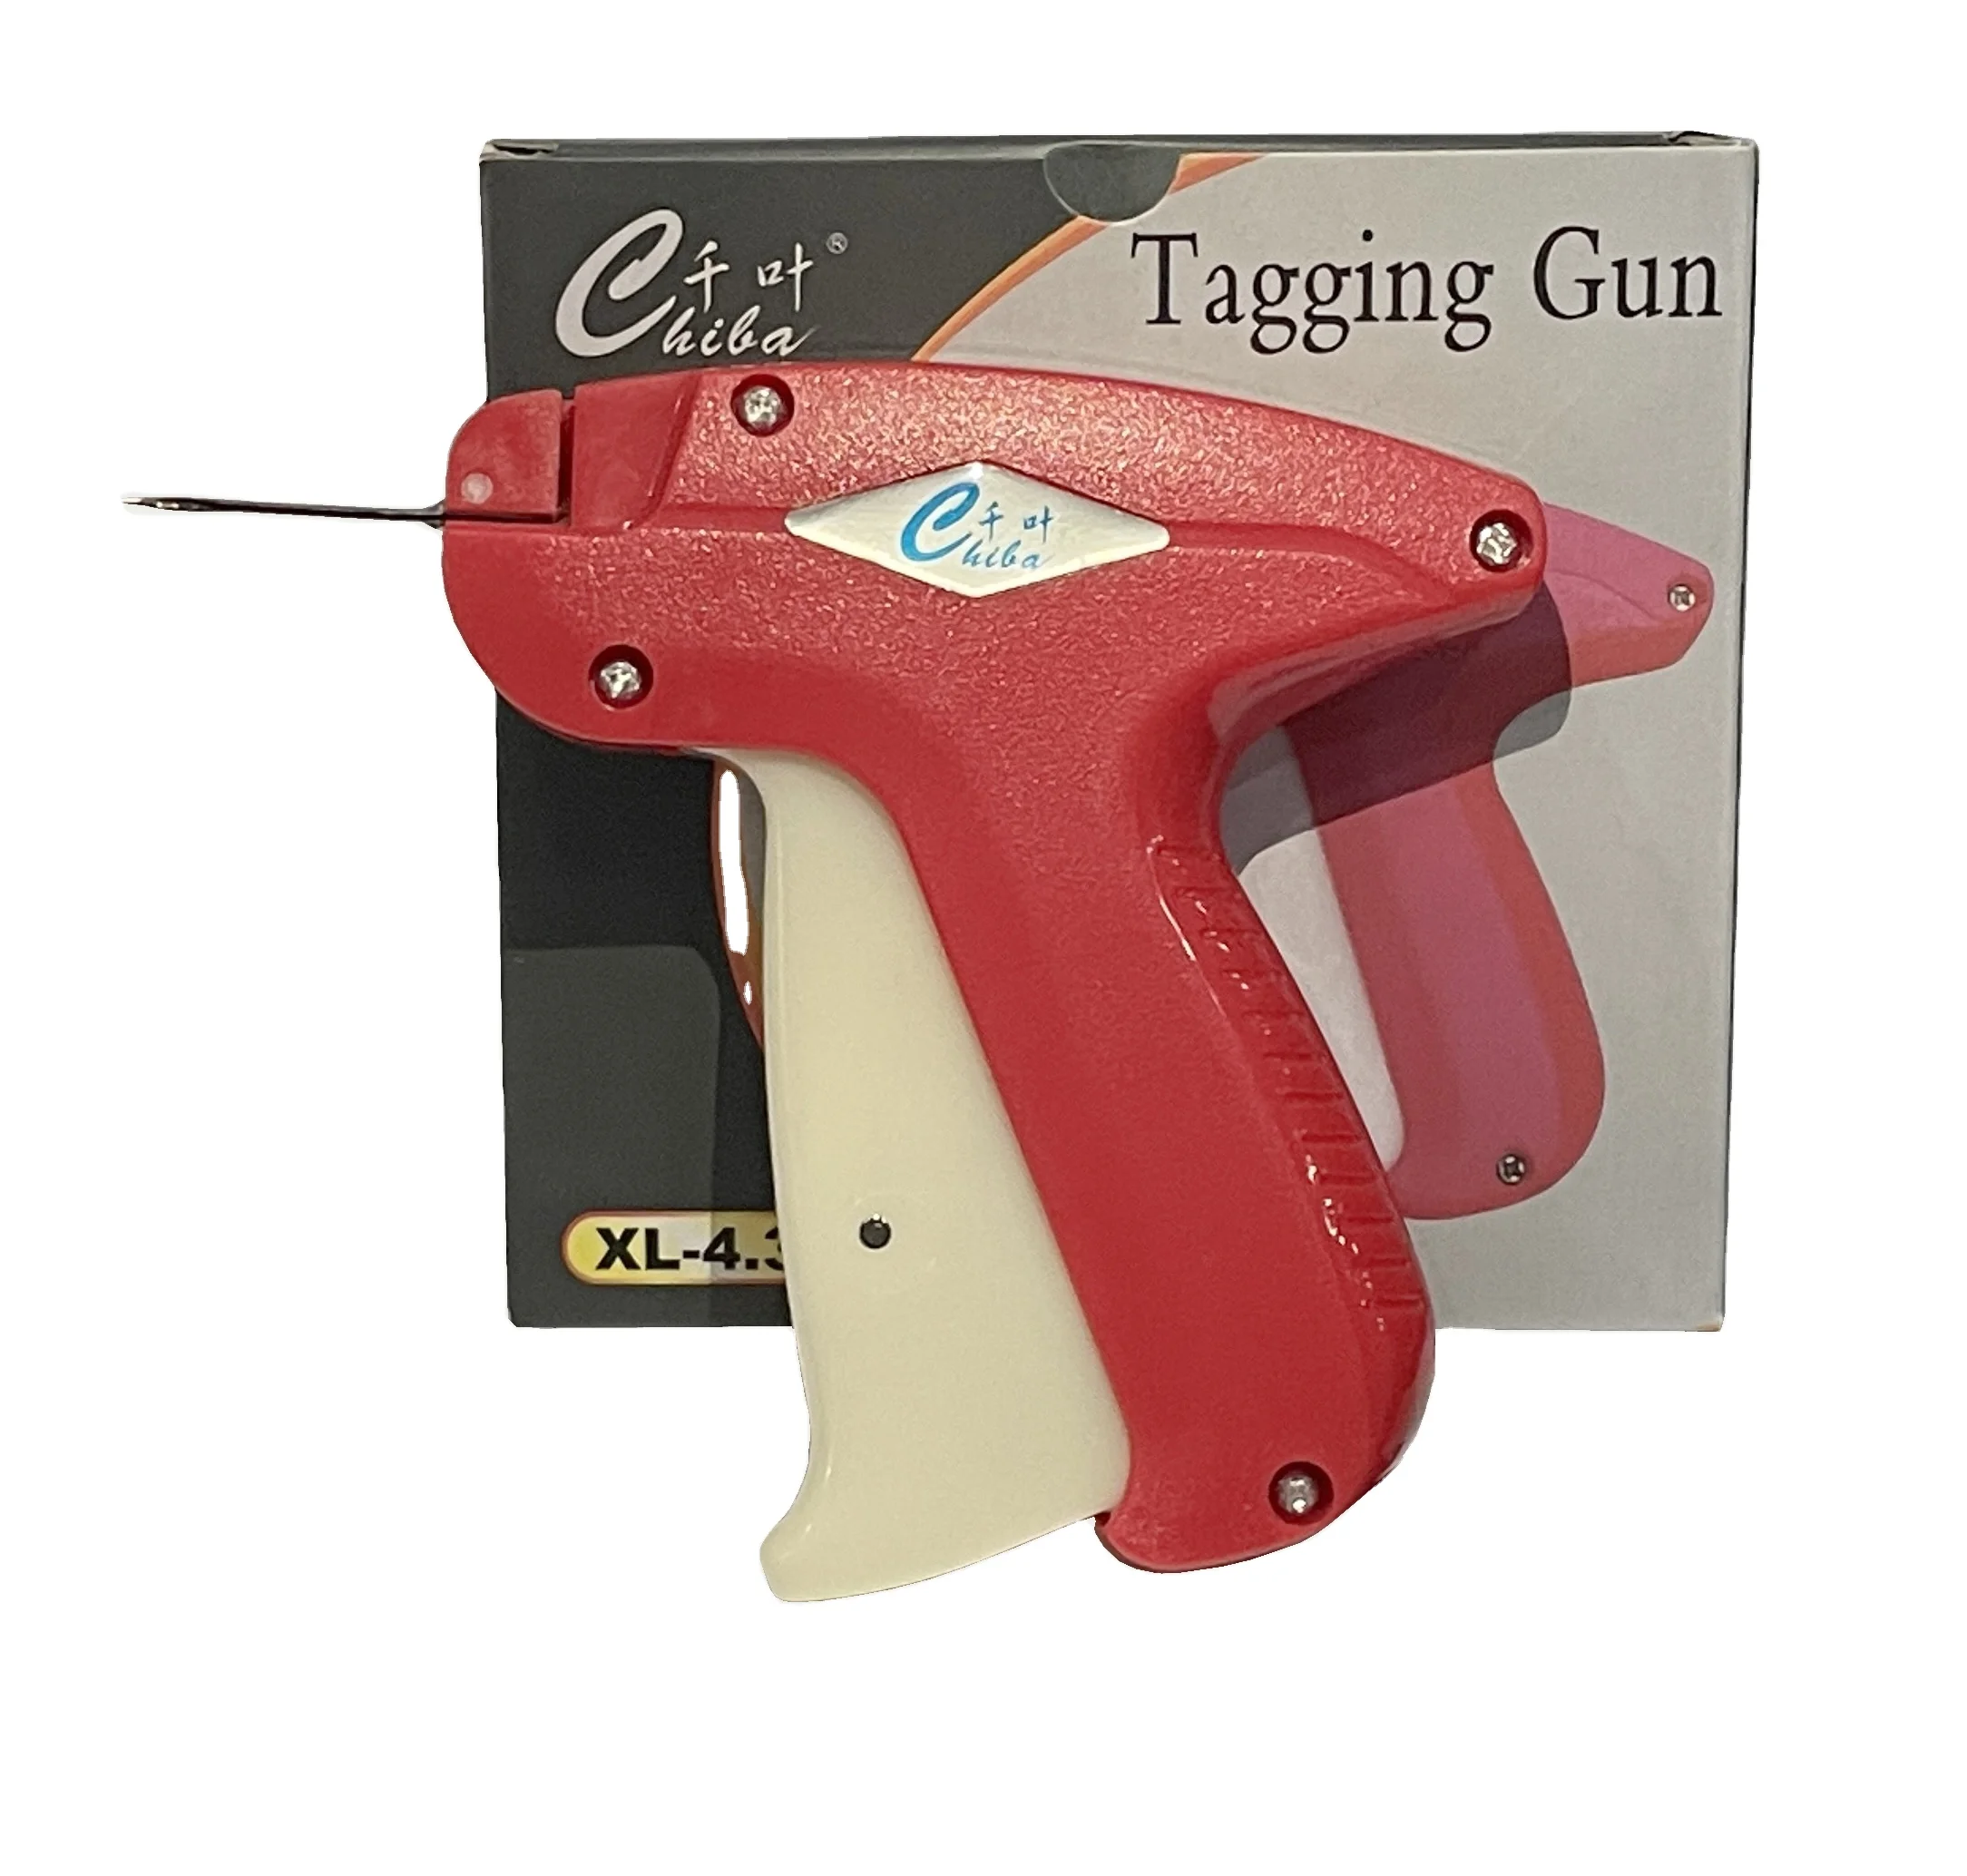 ABS Tag gun XL  4.3 long needle fine tag gun for thick garments